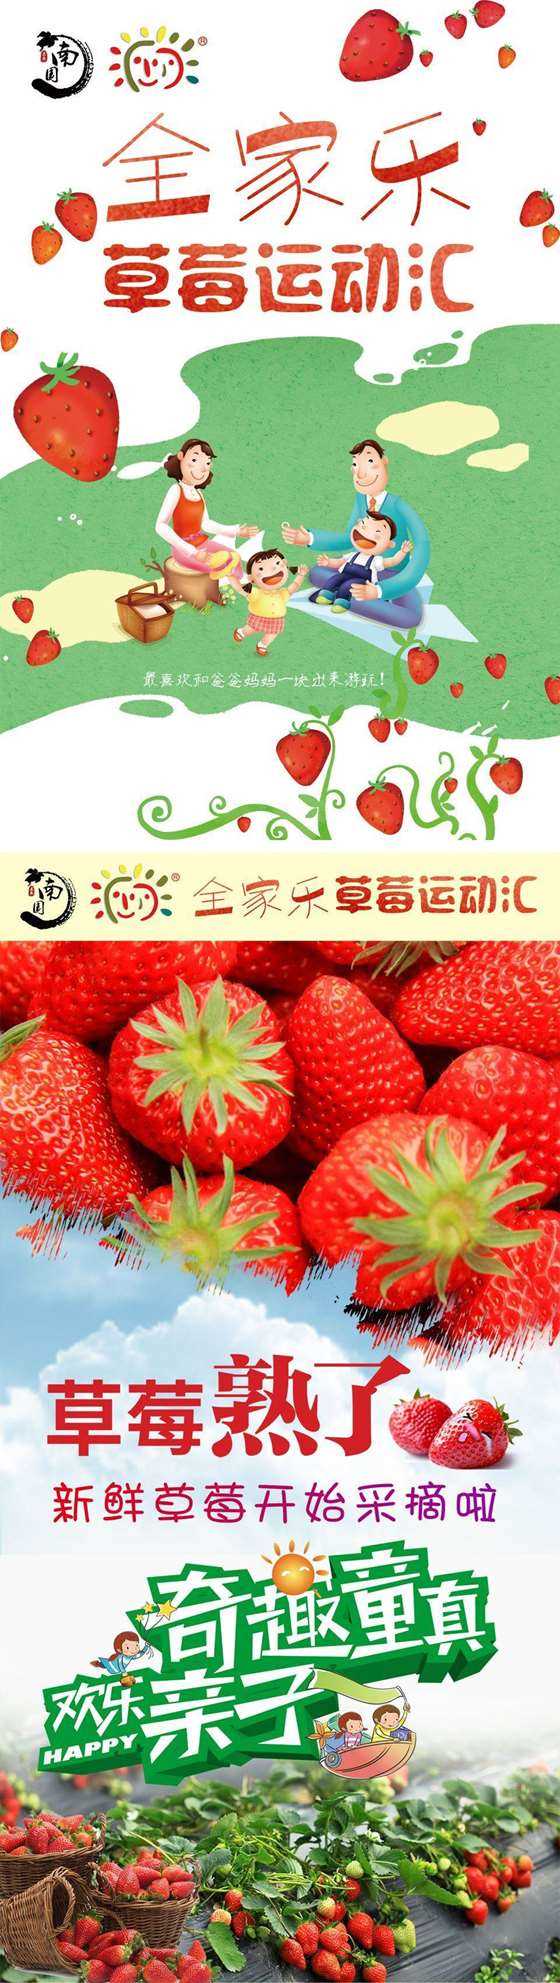 海报详情-草莓1.jpg